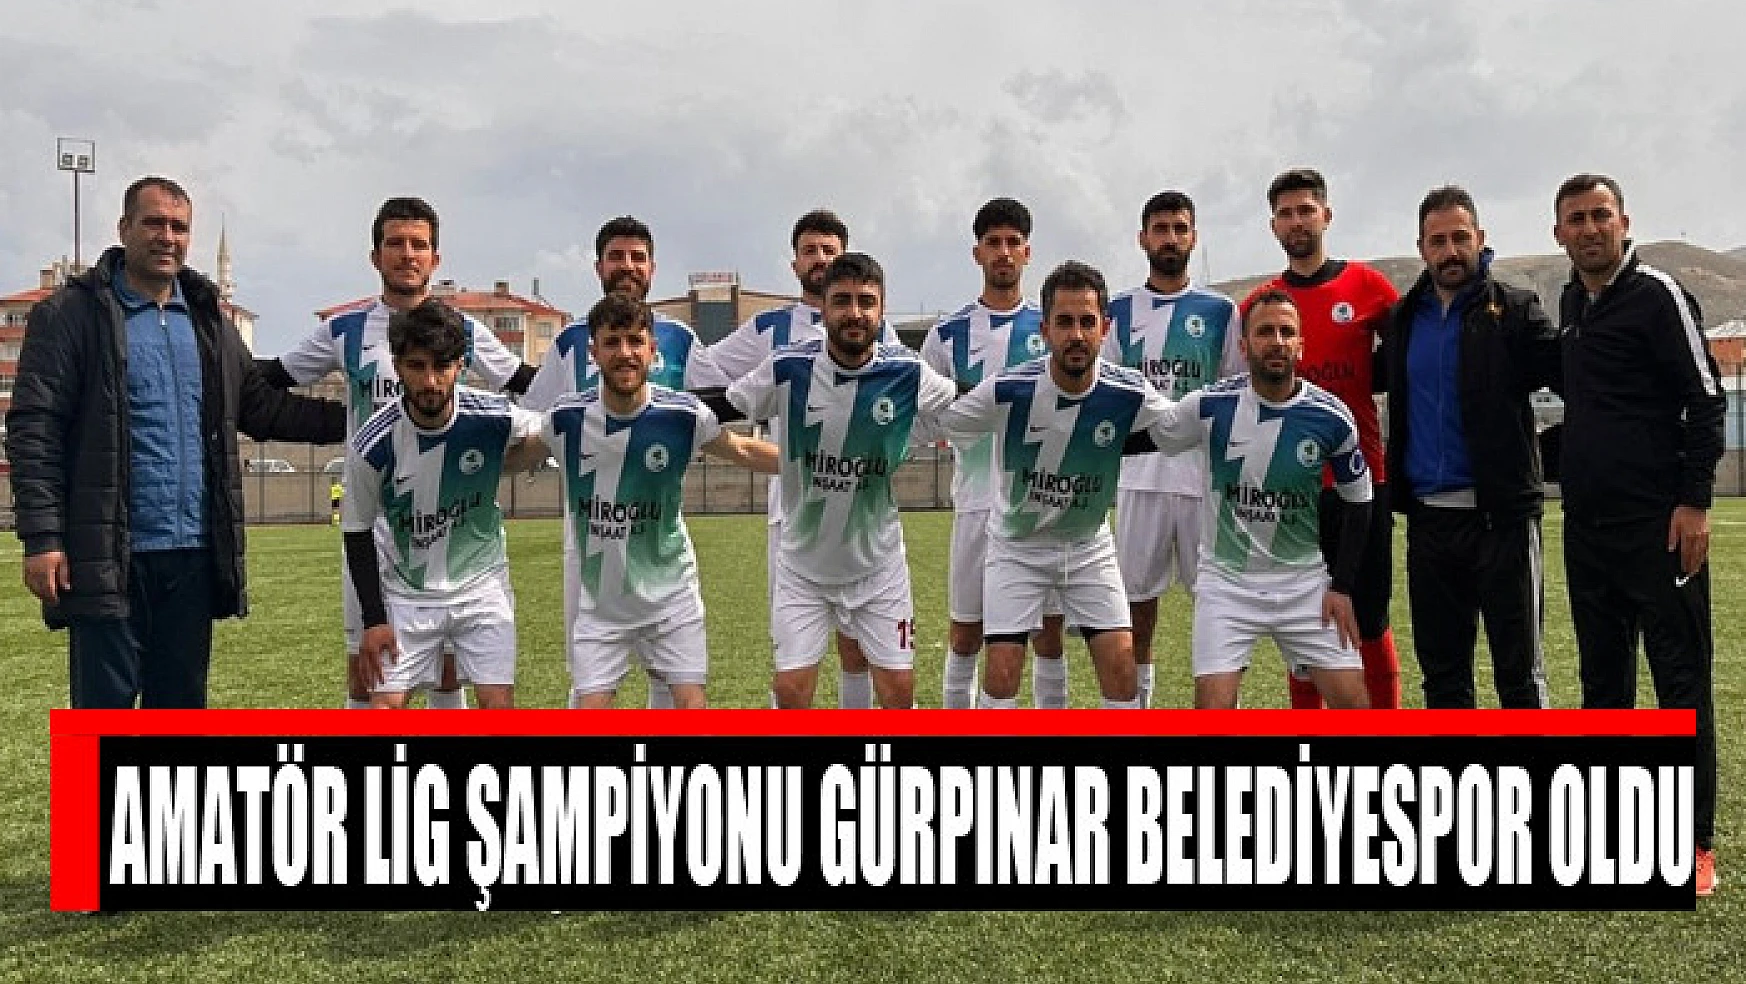 Amatör Lig Şampiyonu Gürpınar Belediyespor oldu